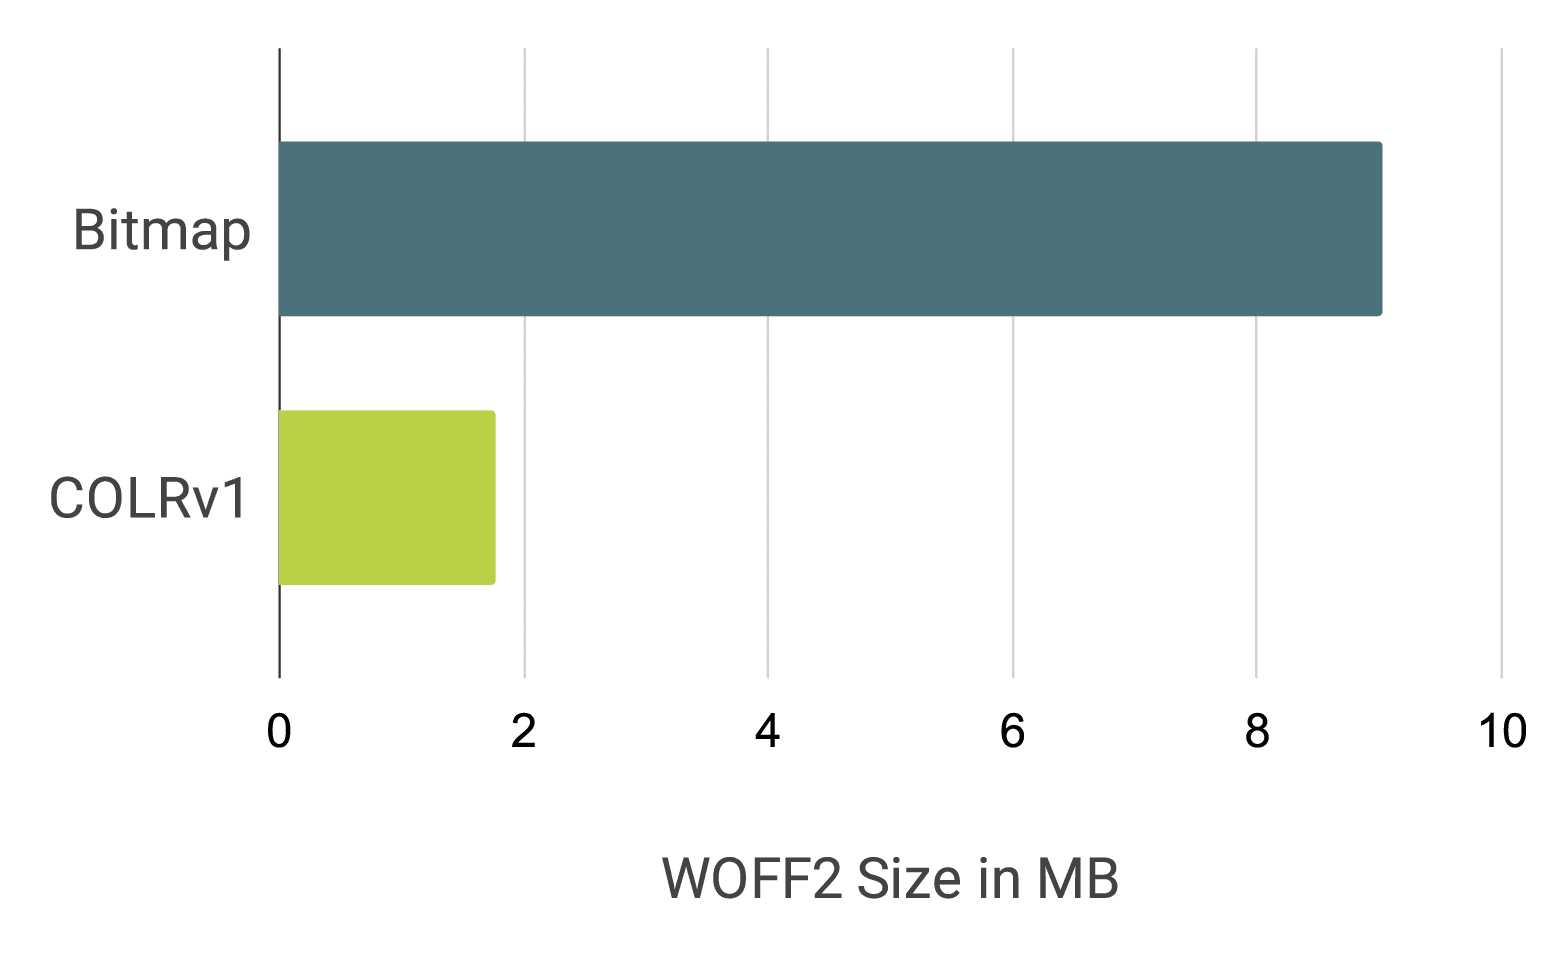 नोटो इमोजी की तुलना बिटमैप फ़ॉन्ट और COLRv1 फ़ॉन्ट से करने वाला बार चार्ट, जो करीब 9 एमबी बनाम 1.85 एमबी